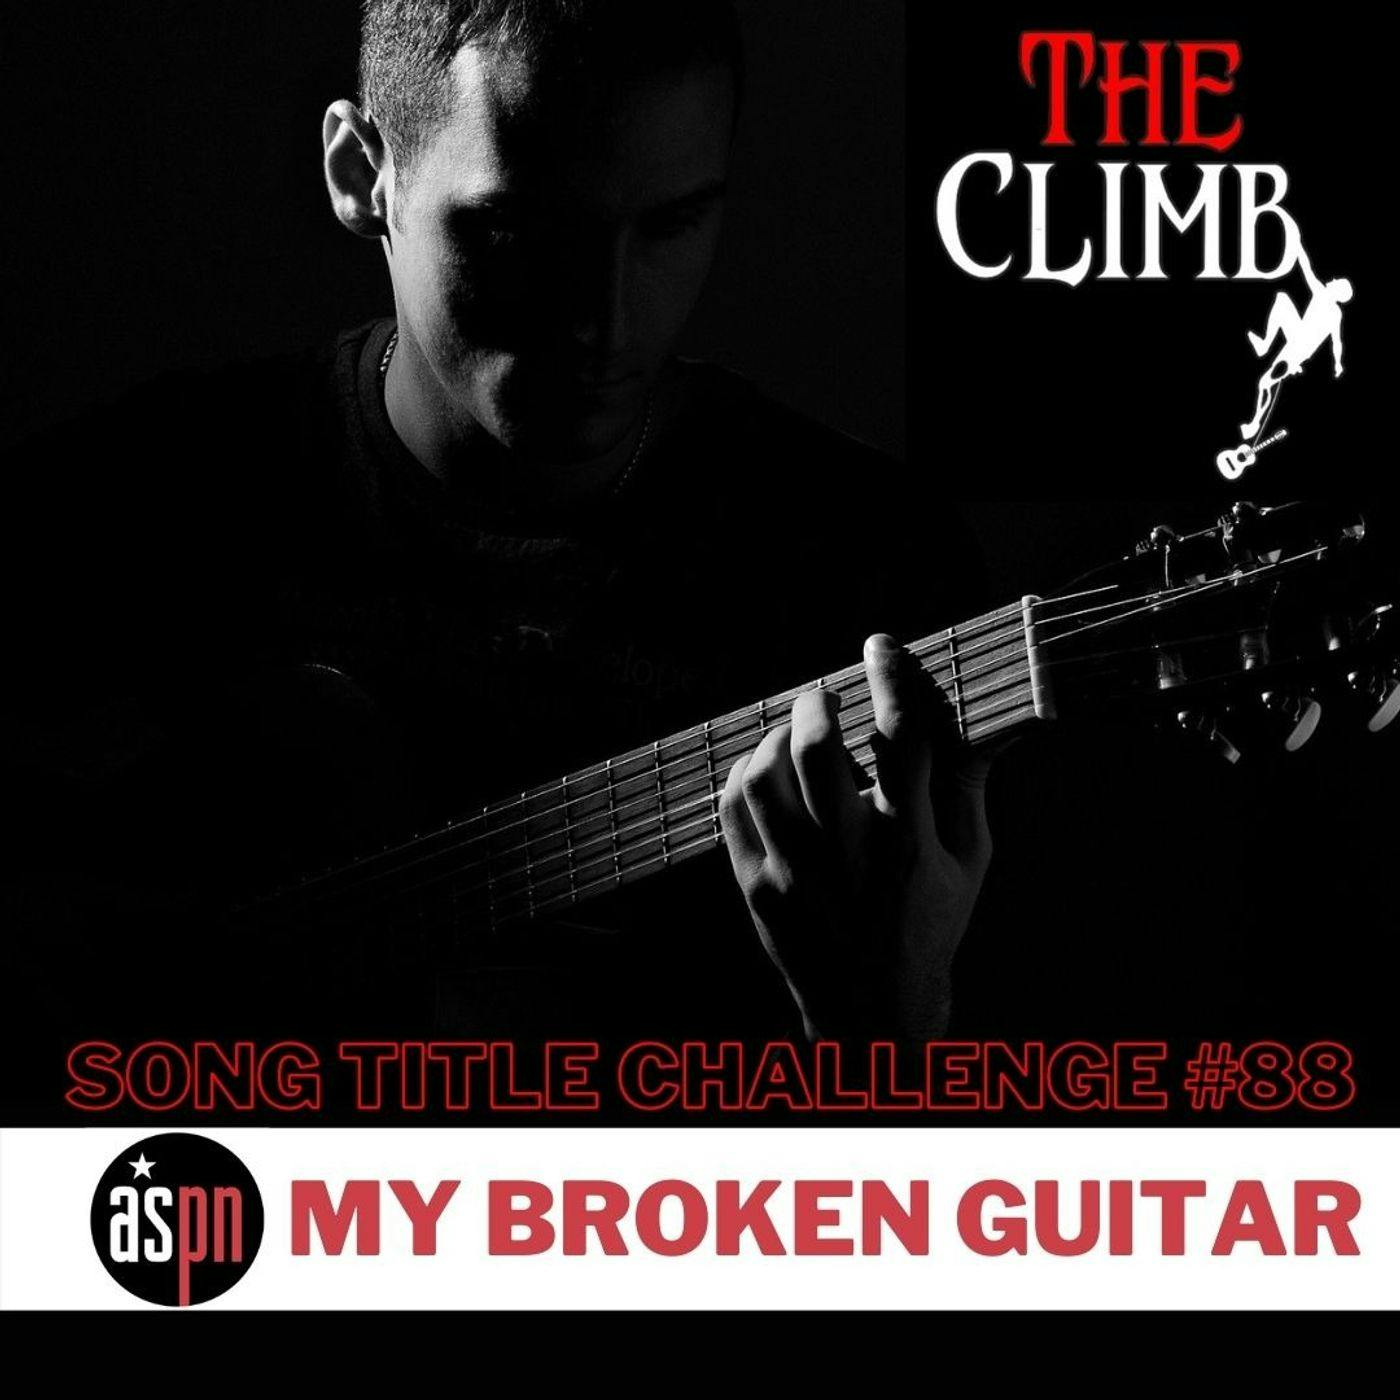 Song Title Challenge #88: My Broken Guitar